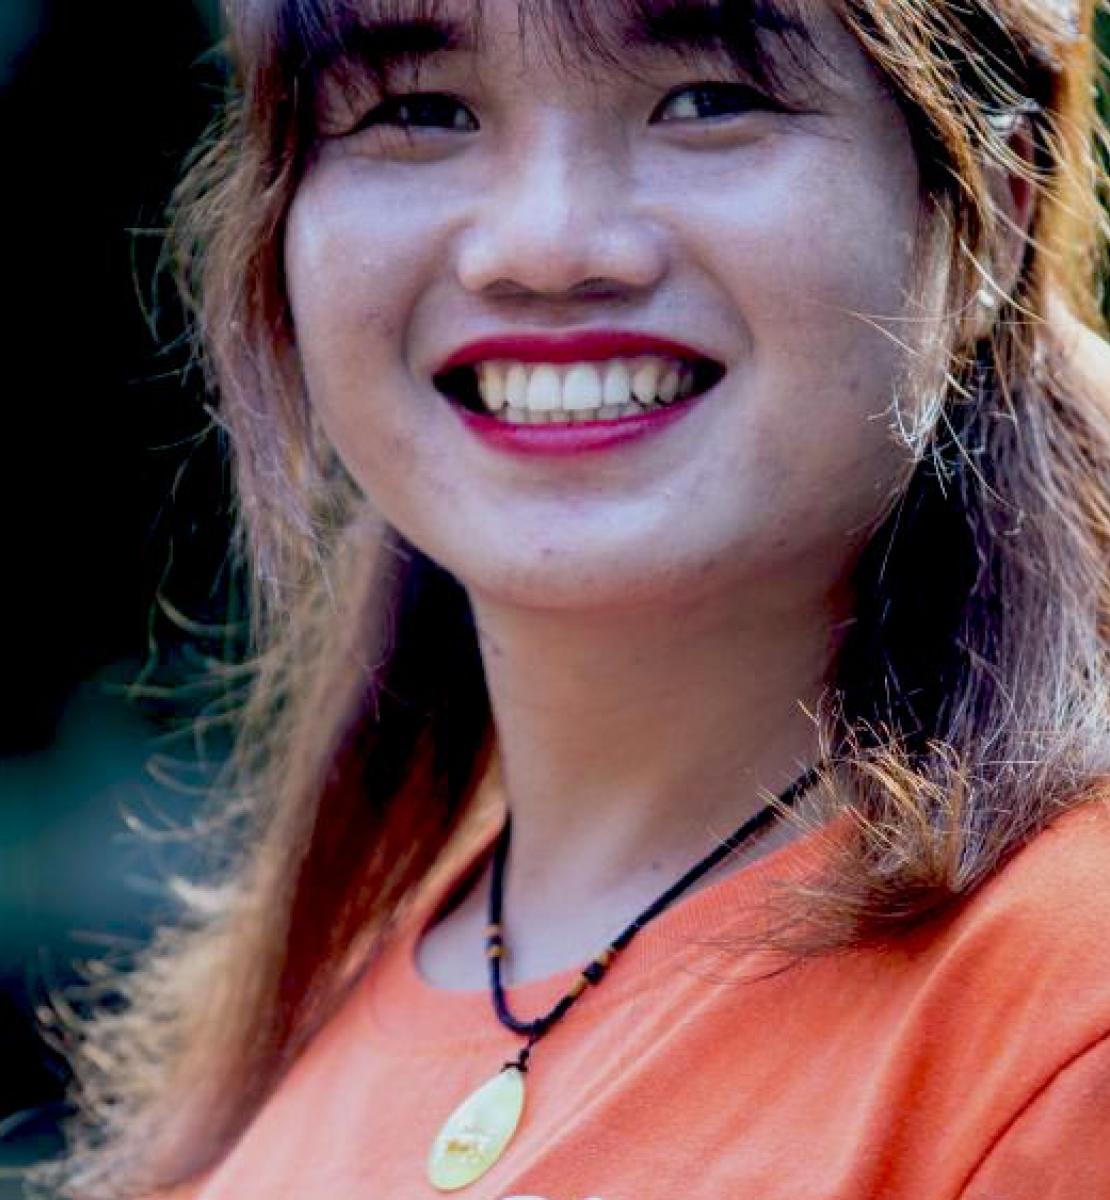 Primer plano de Kim Thuy, quien tiene una gran sonrisa en su rostro, mirando a la cámara. Kim Thuy es una activista transgénero de Vietnam que sueña con organizar un desfile del orgullo gay en la comunidad donde creció.